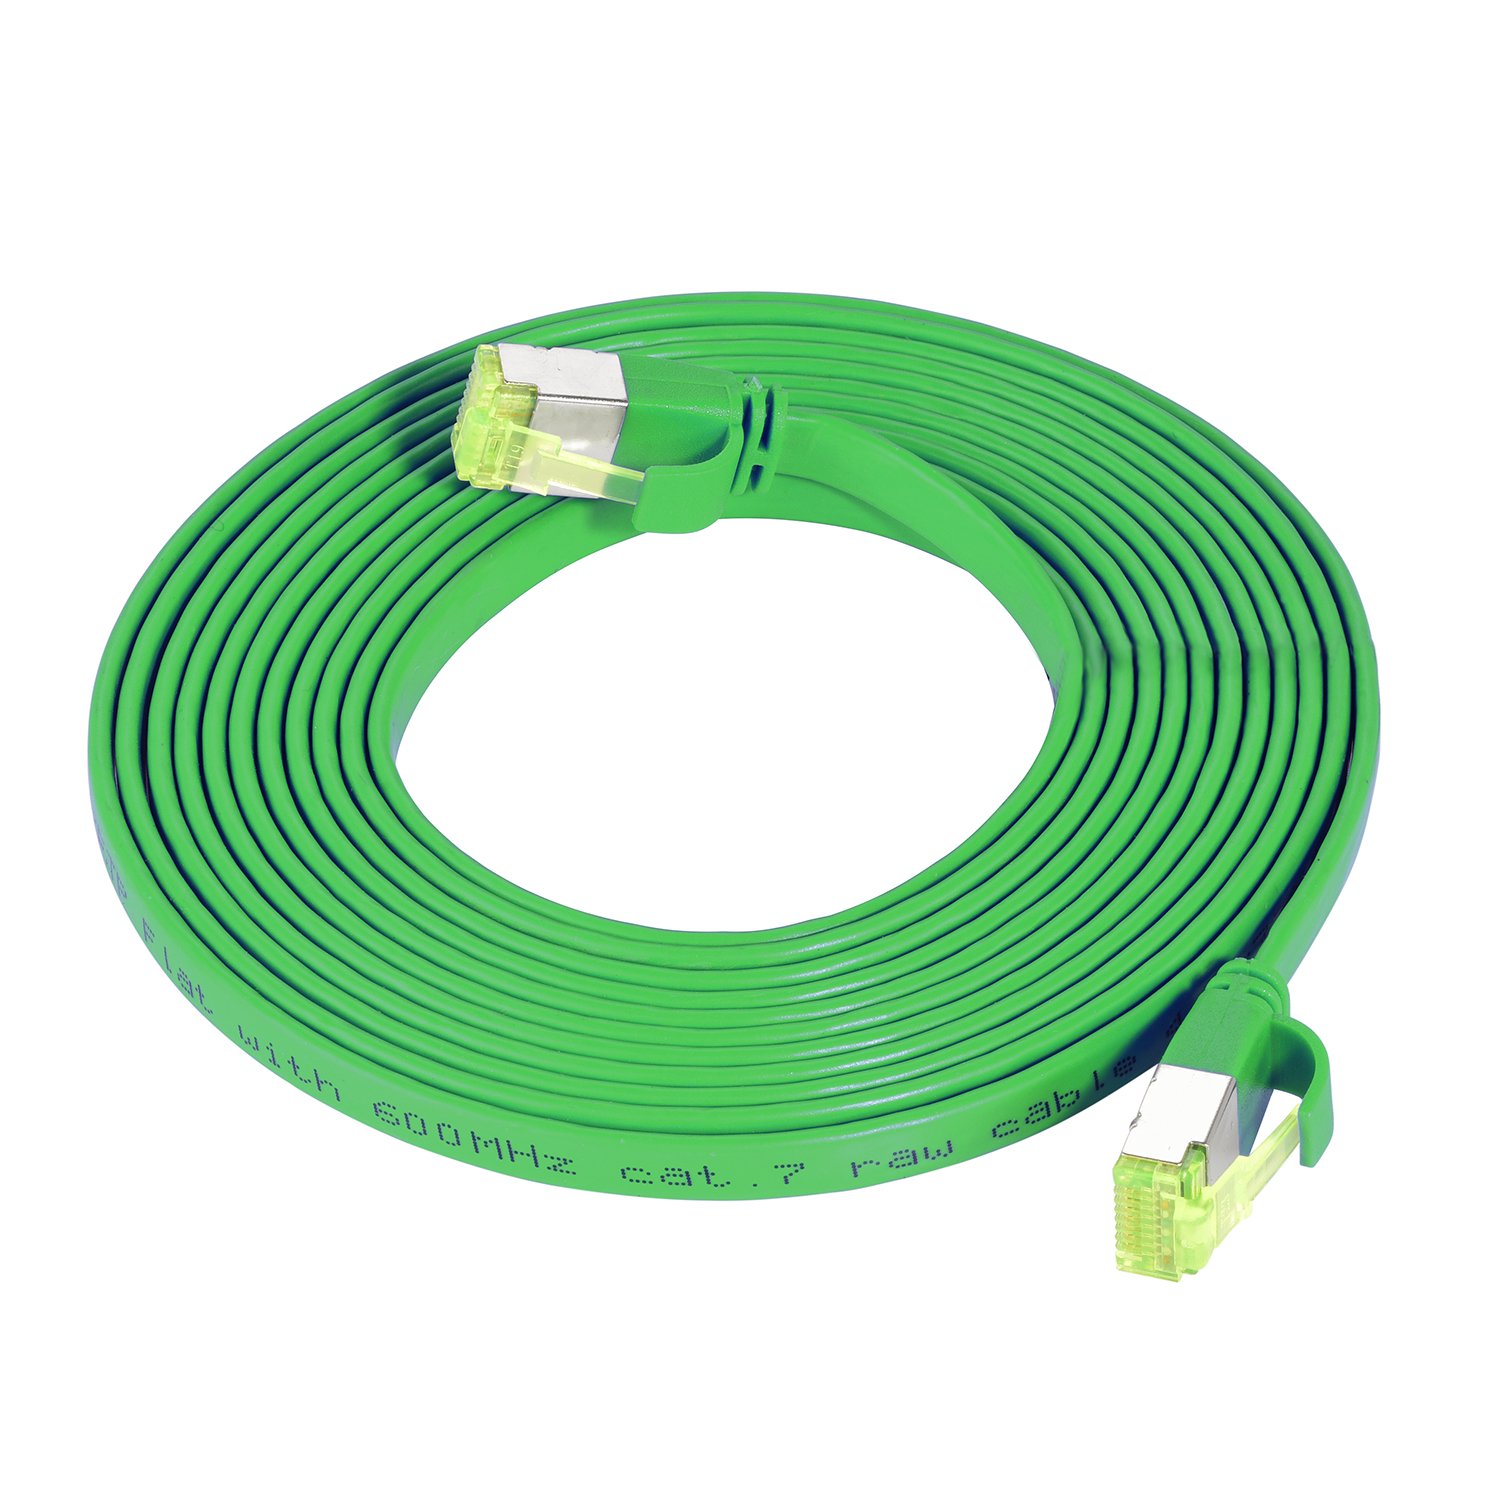 Flachkabel / TPFNET 0,5 m grün, U/FTP GBit, 0,50m Netzwerkkabel, 10 Patchkabel